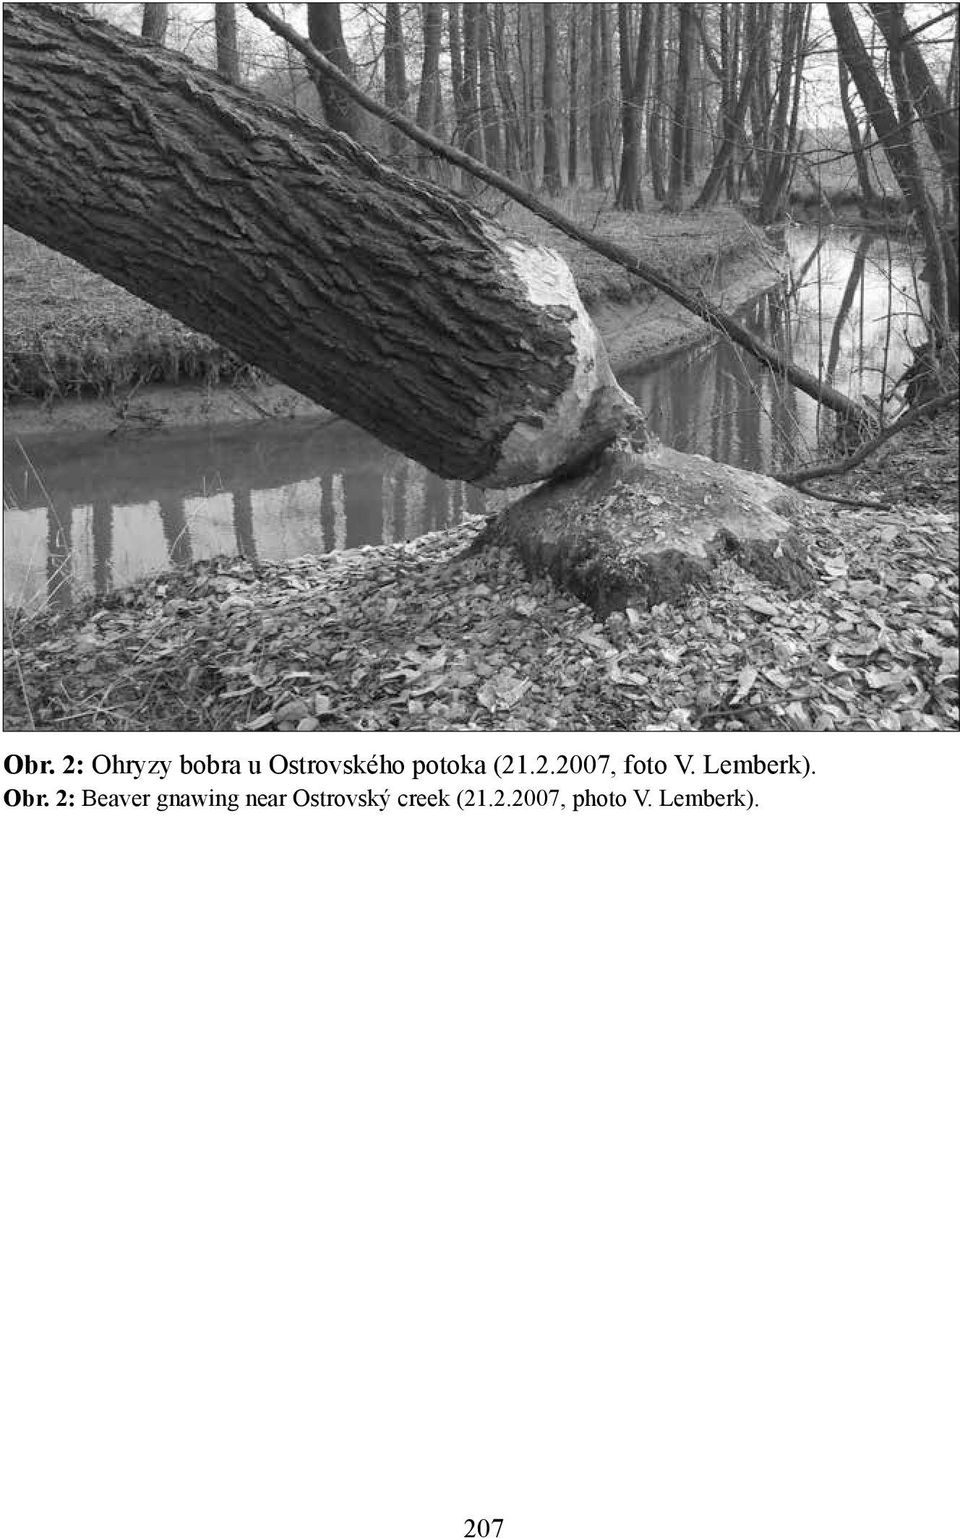 Obr. 2: Beaver gnawing near Ostrovský